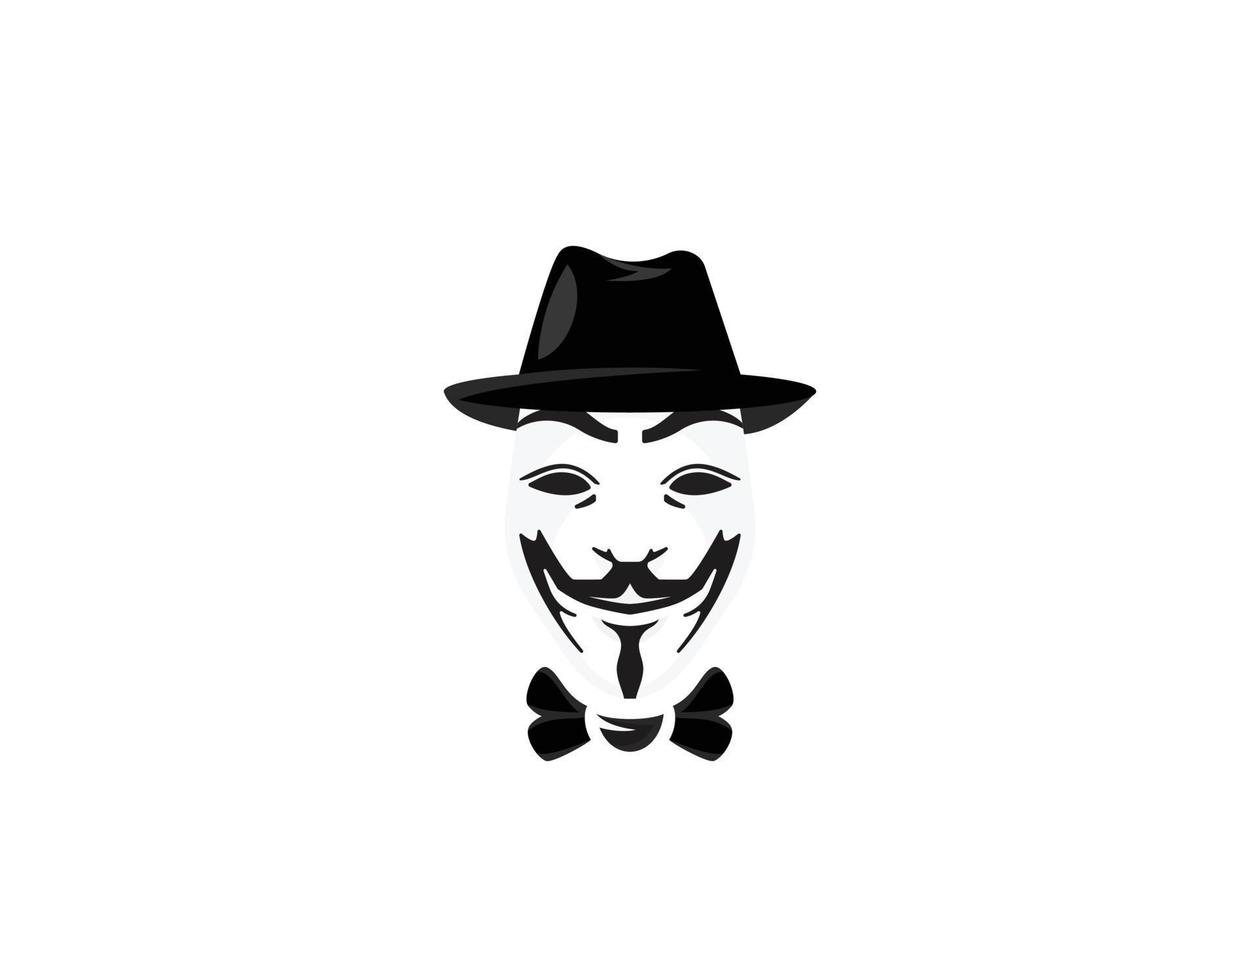 Programmer Hacker logo design vector